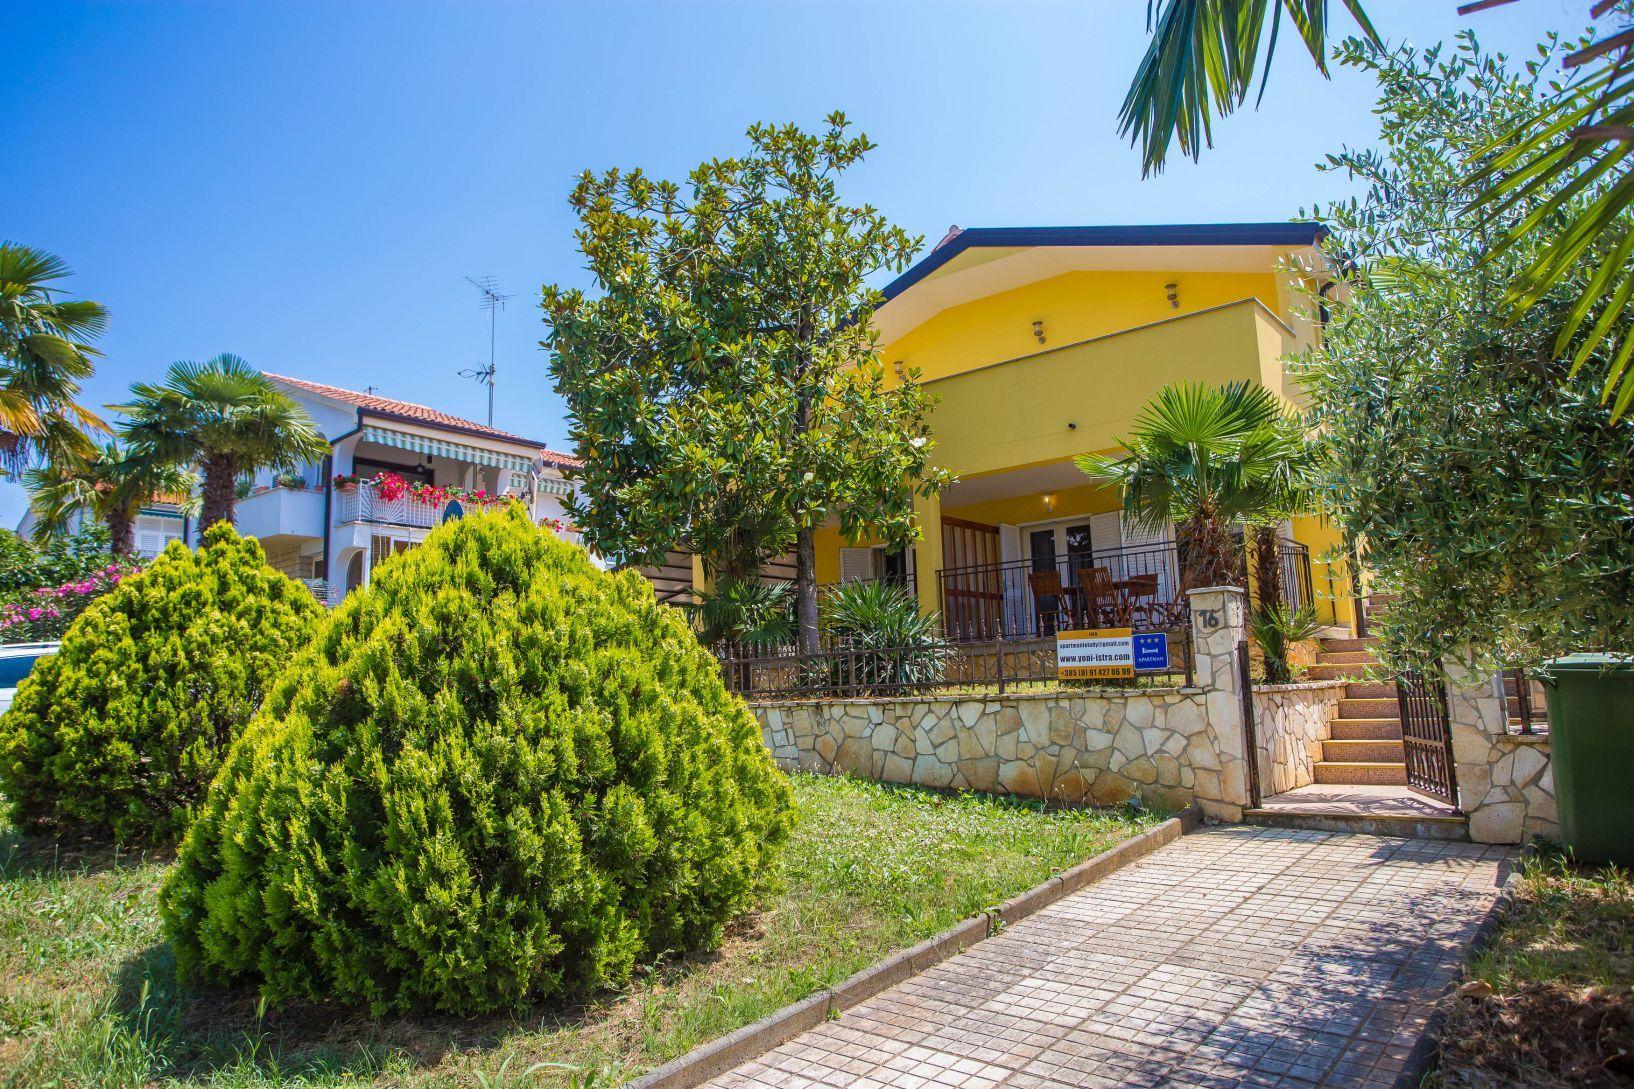 Ferienwohnung für 8 Personen ca. 150 m²  Ferienhaus in Kroatien